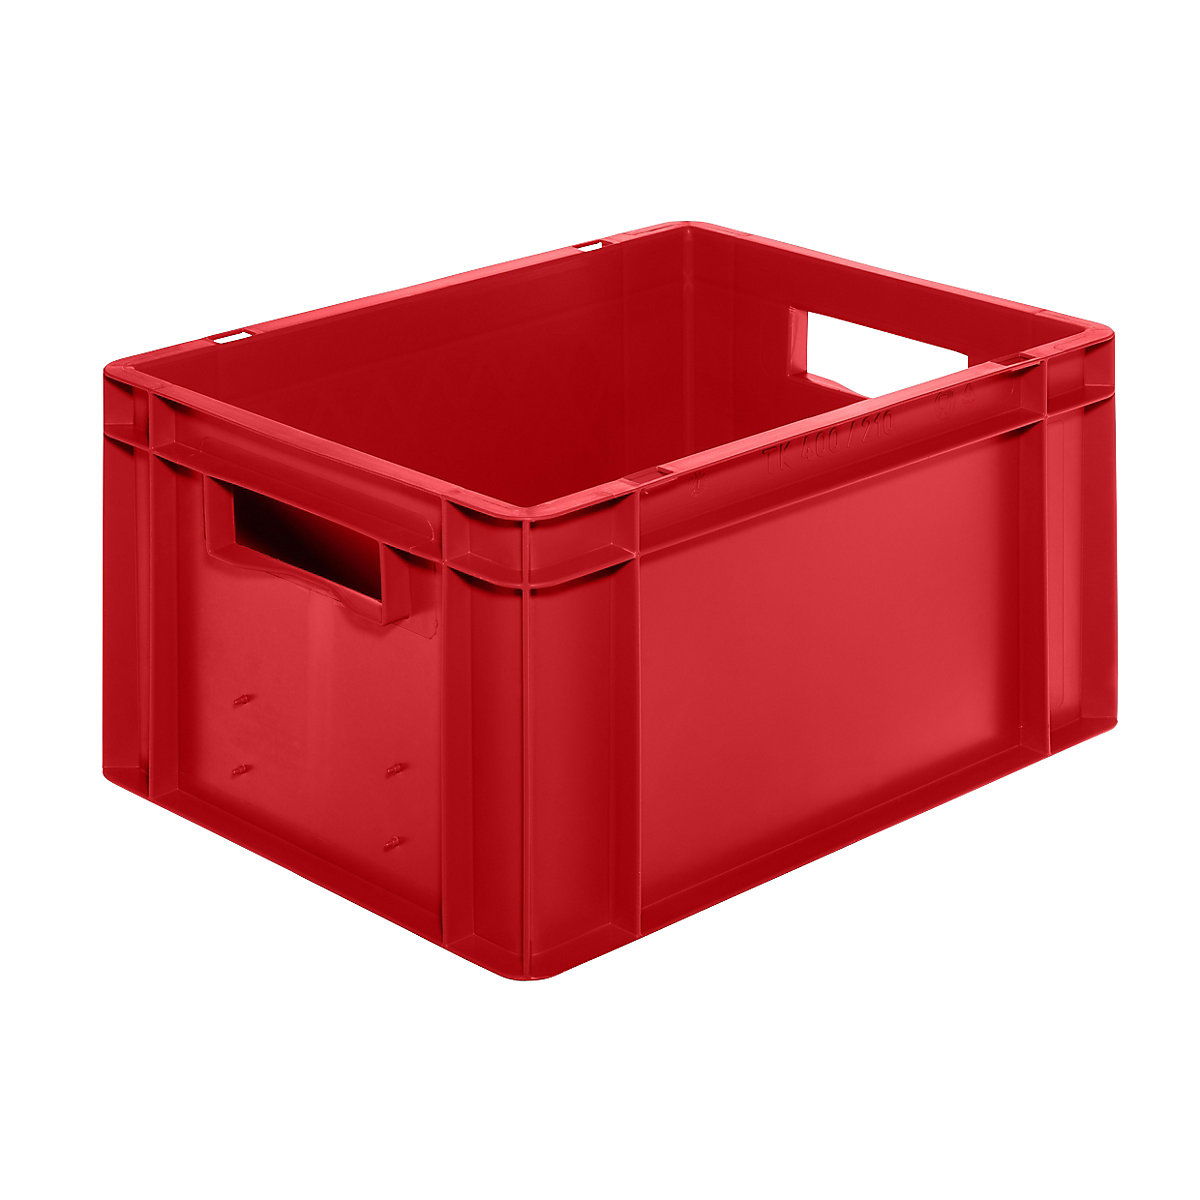 Euro-Format-Stapelbehälter, Wände und Boden geschlossen, LxBxH 400 x 300 x 210 mm, rot, VE 5 Stk